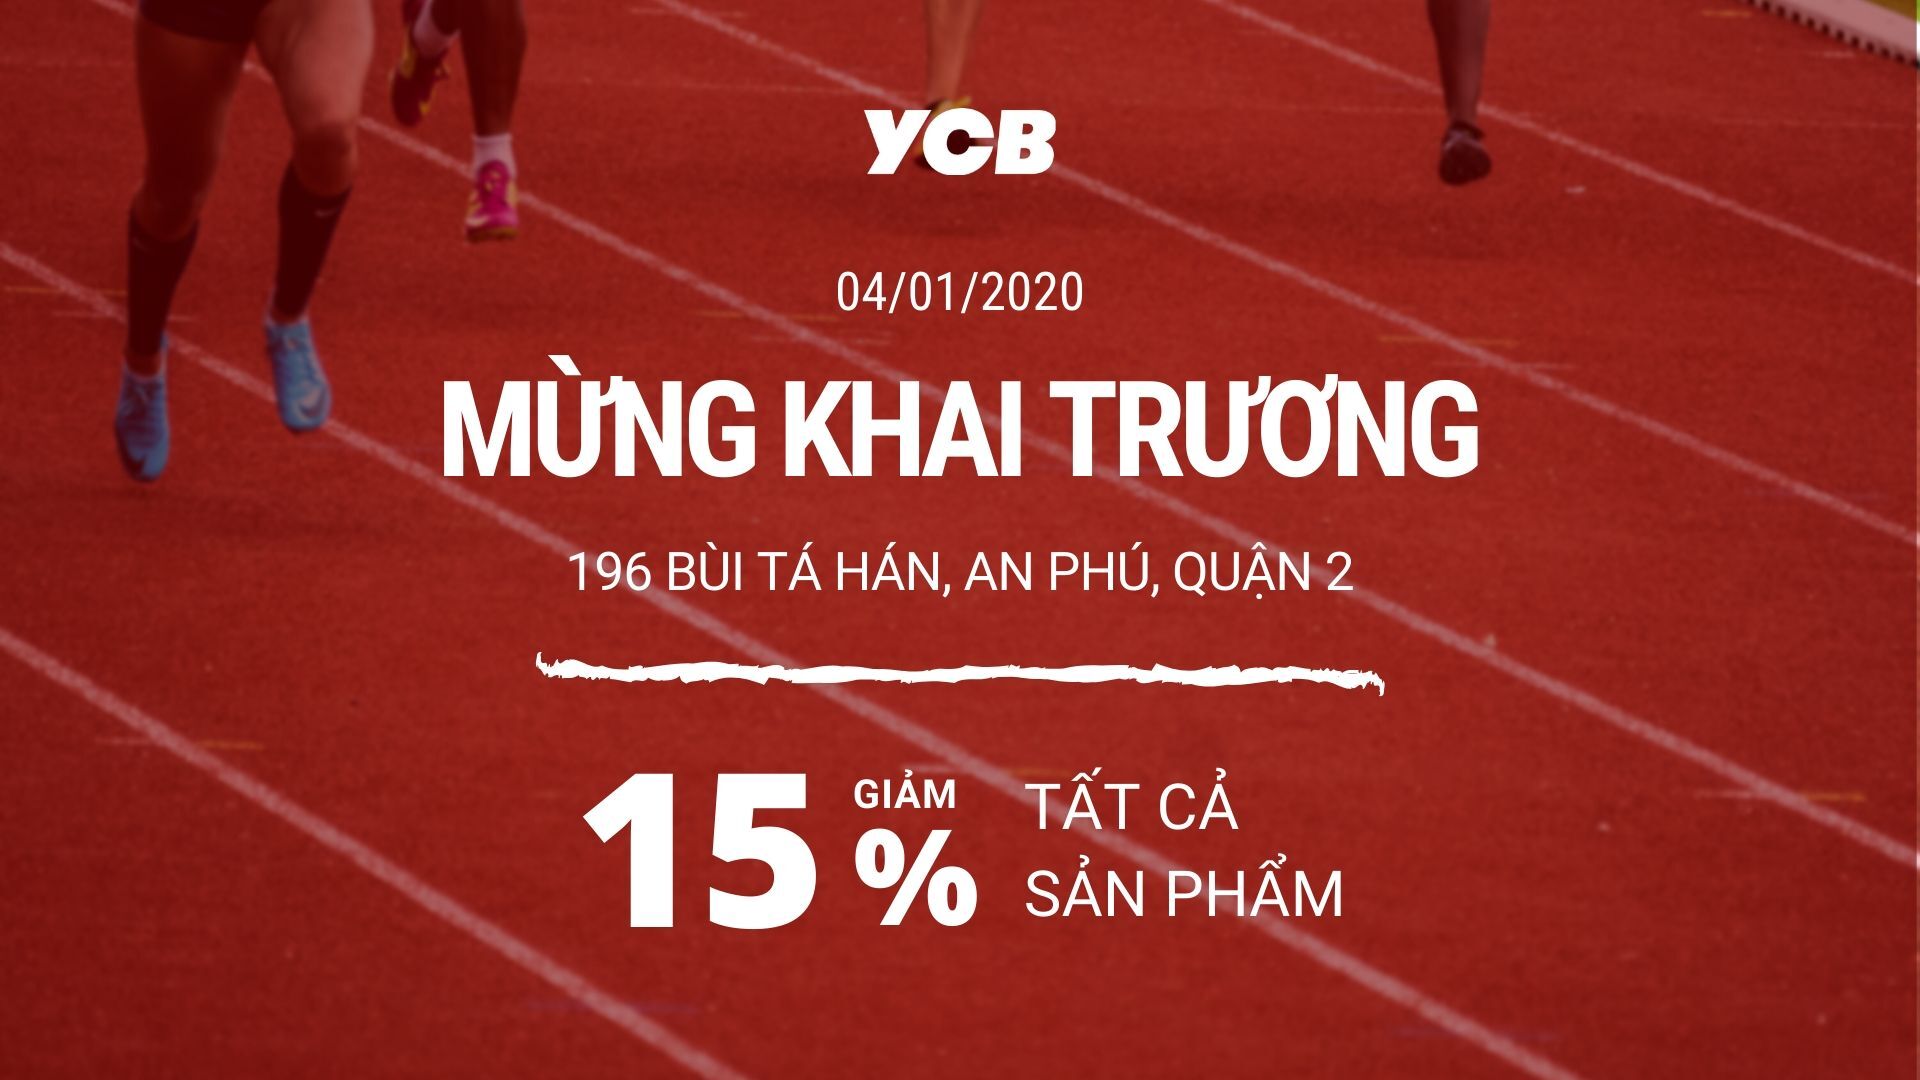 khai truong ycb 196 bui ta han YCB khai trương cửa hàng mới - Giảm giá 15% tất cả sản phẩm - YCB.vn